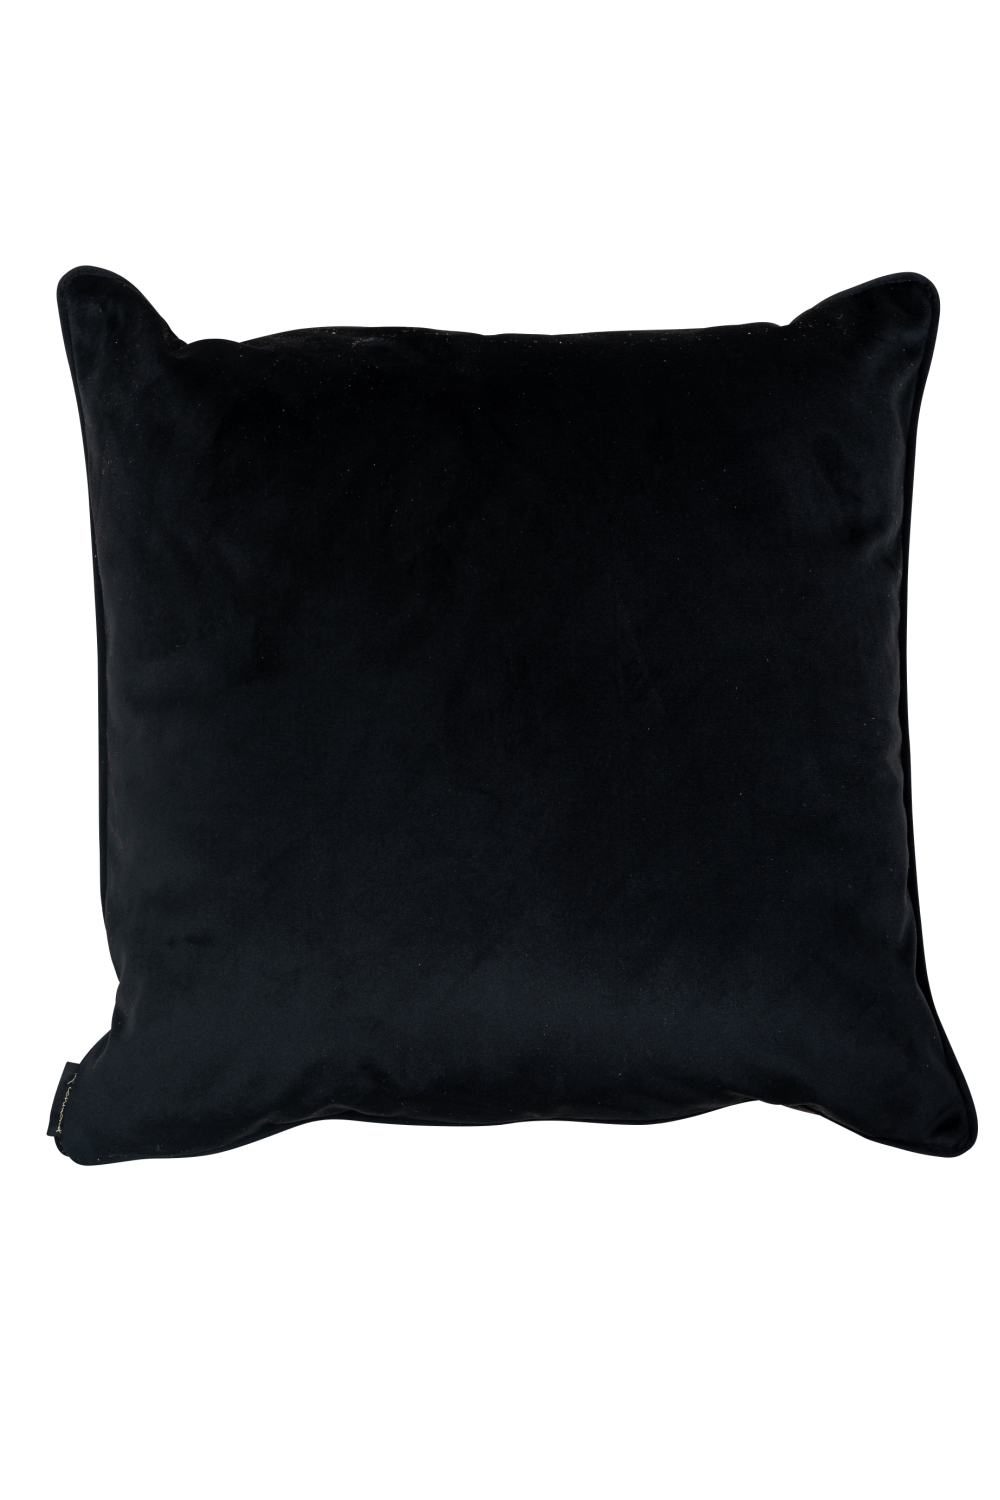 Animal Skin Pattern Throw Pillow | OROA Jynte | OROA.com